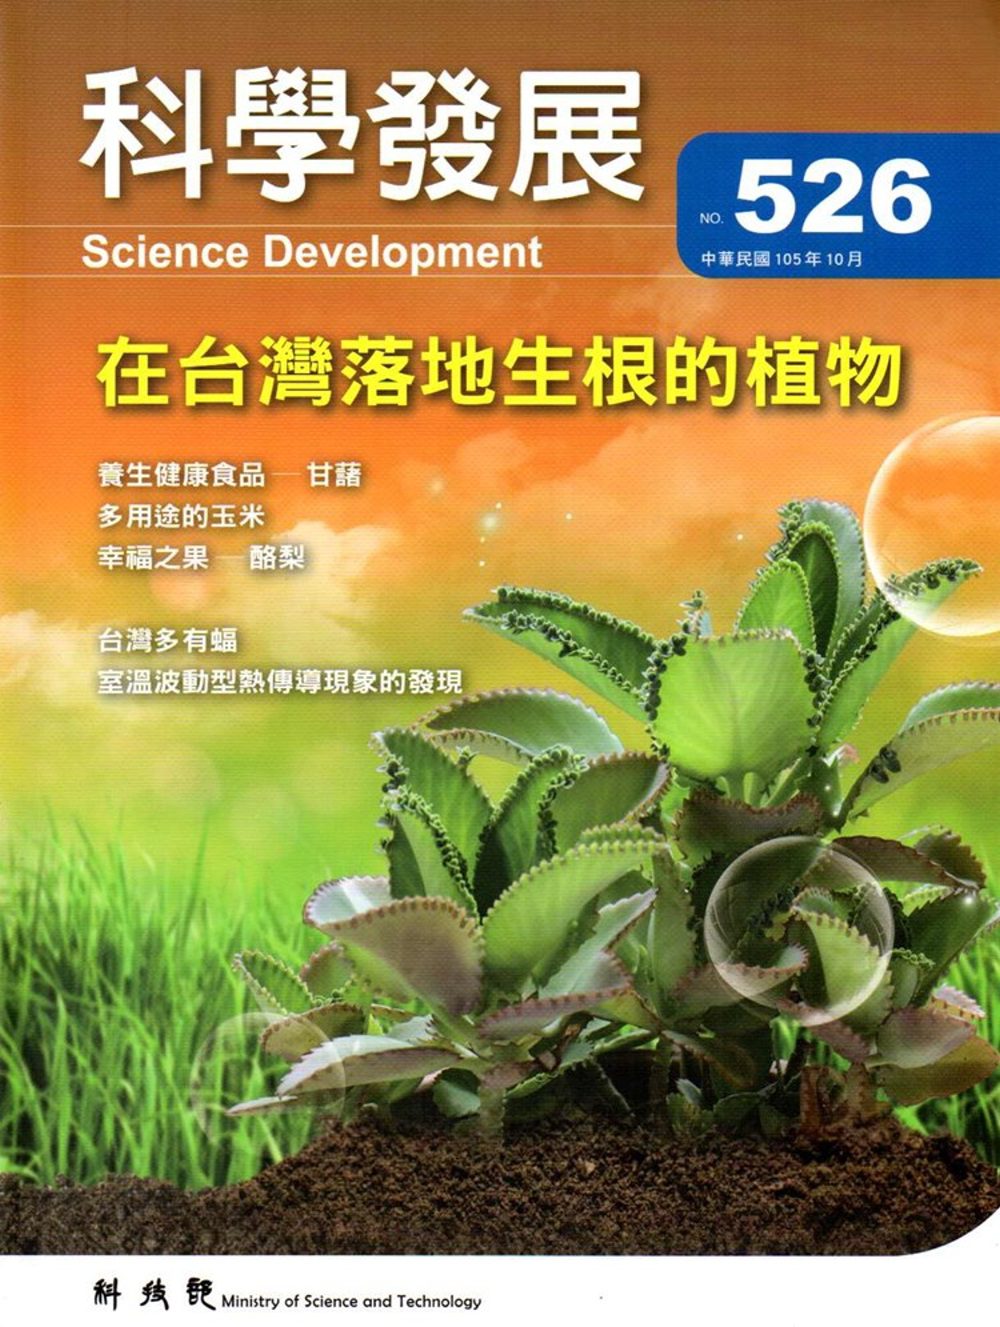 科學發展月刊第526期(105/10)